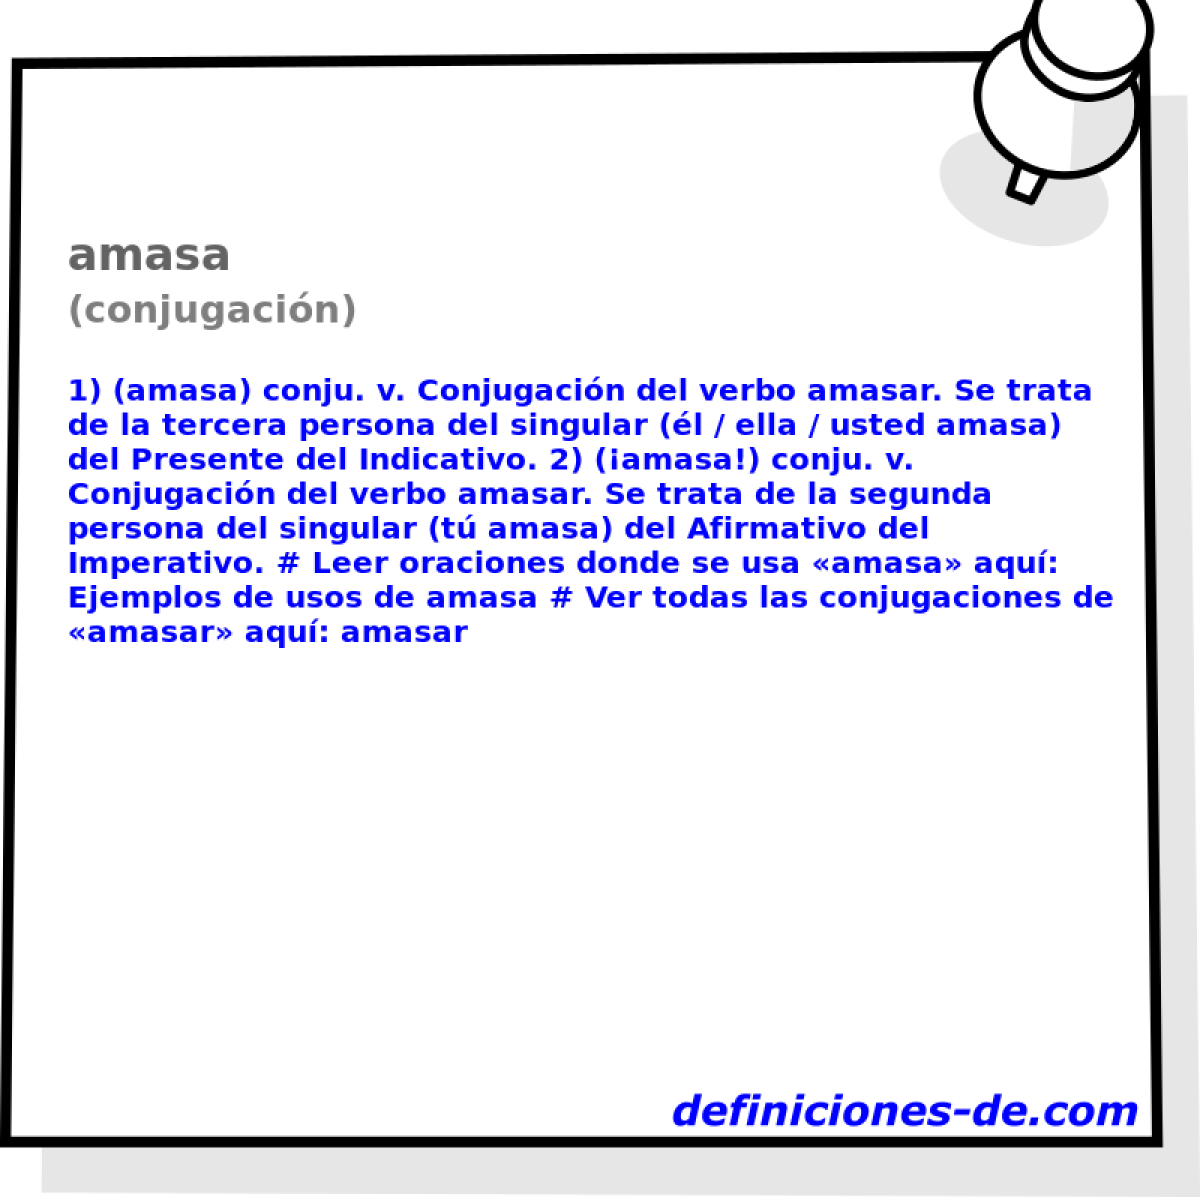 amasa (conjugacin)